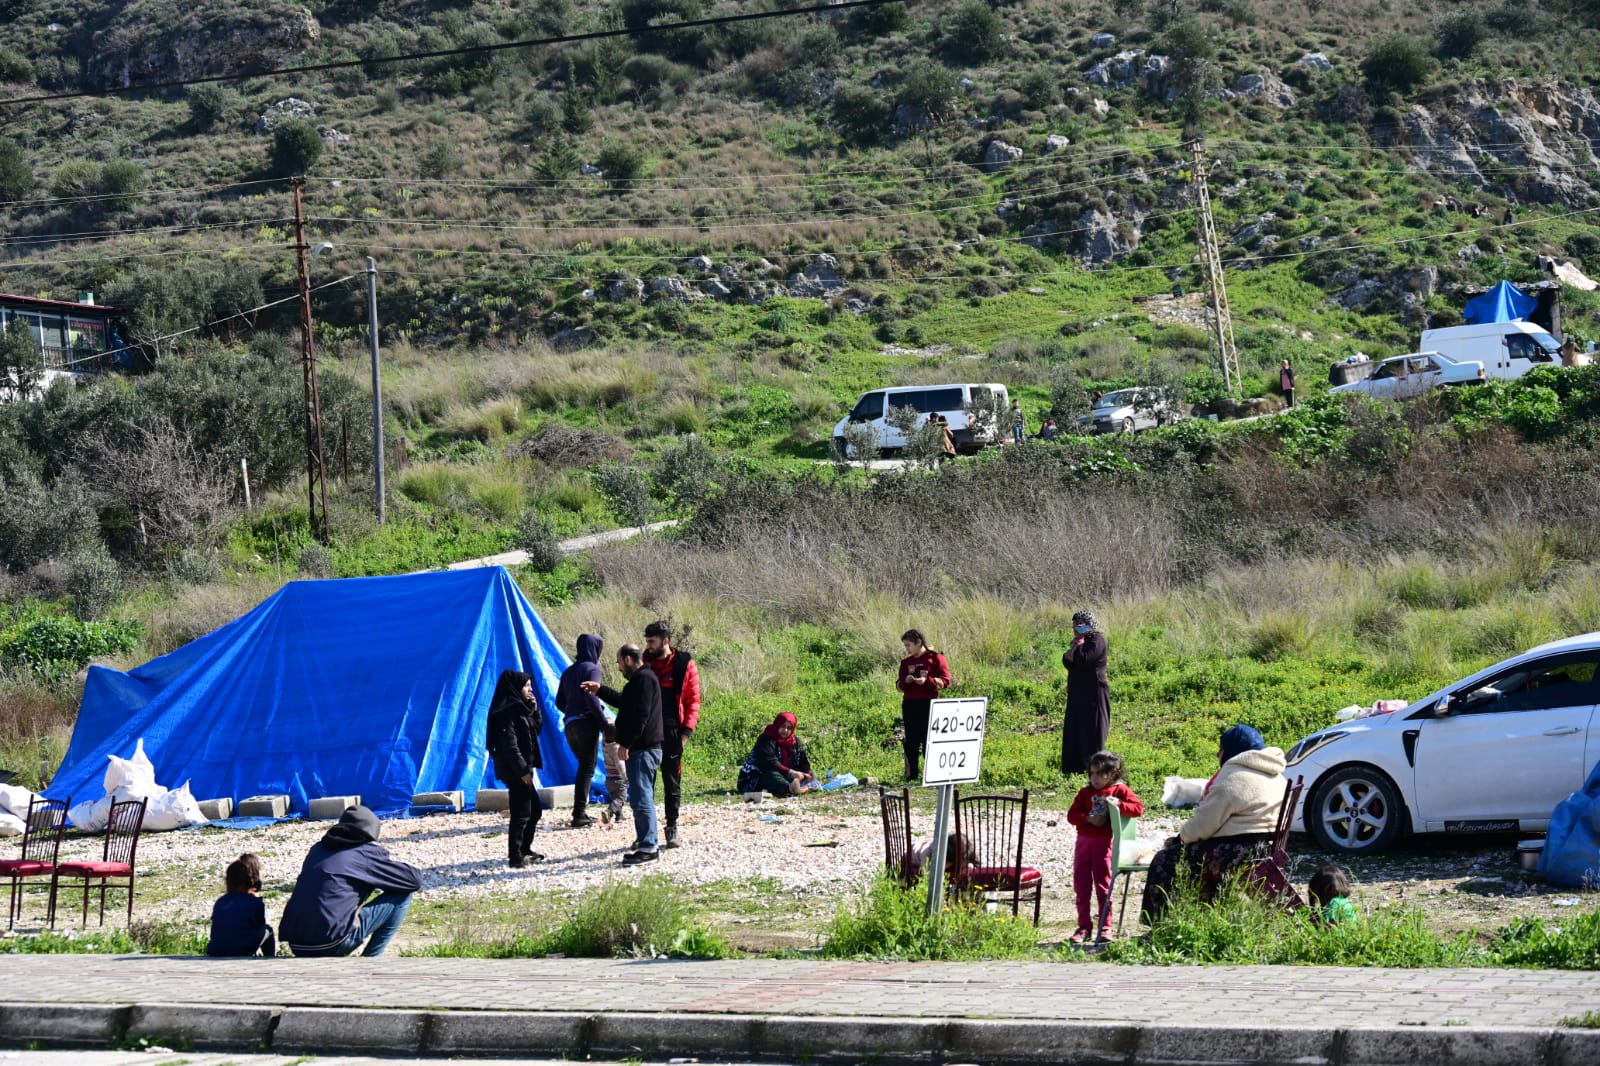 מתחמי אוהלים מאולתרים למשפחות שאיבדו את ביתם. הילדים משחקים כדורגל או יושבים סביב מדורה. (צילום: אוריאל לוי)